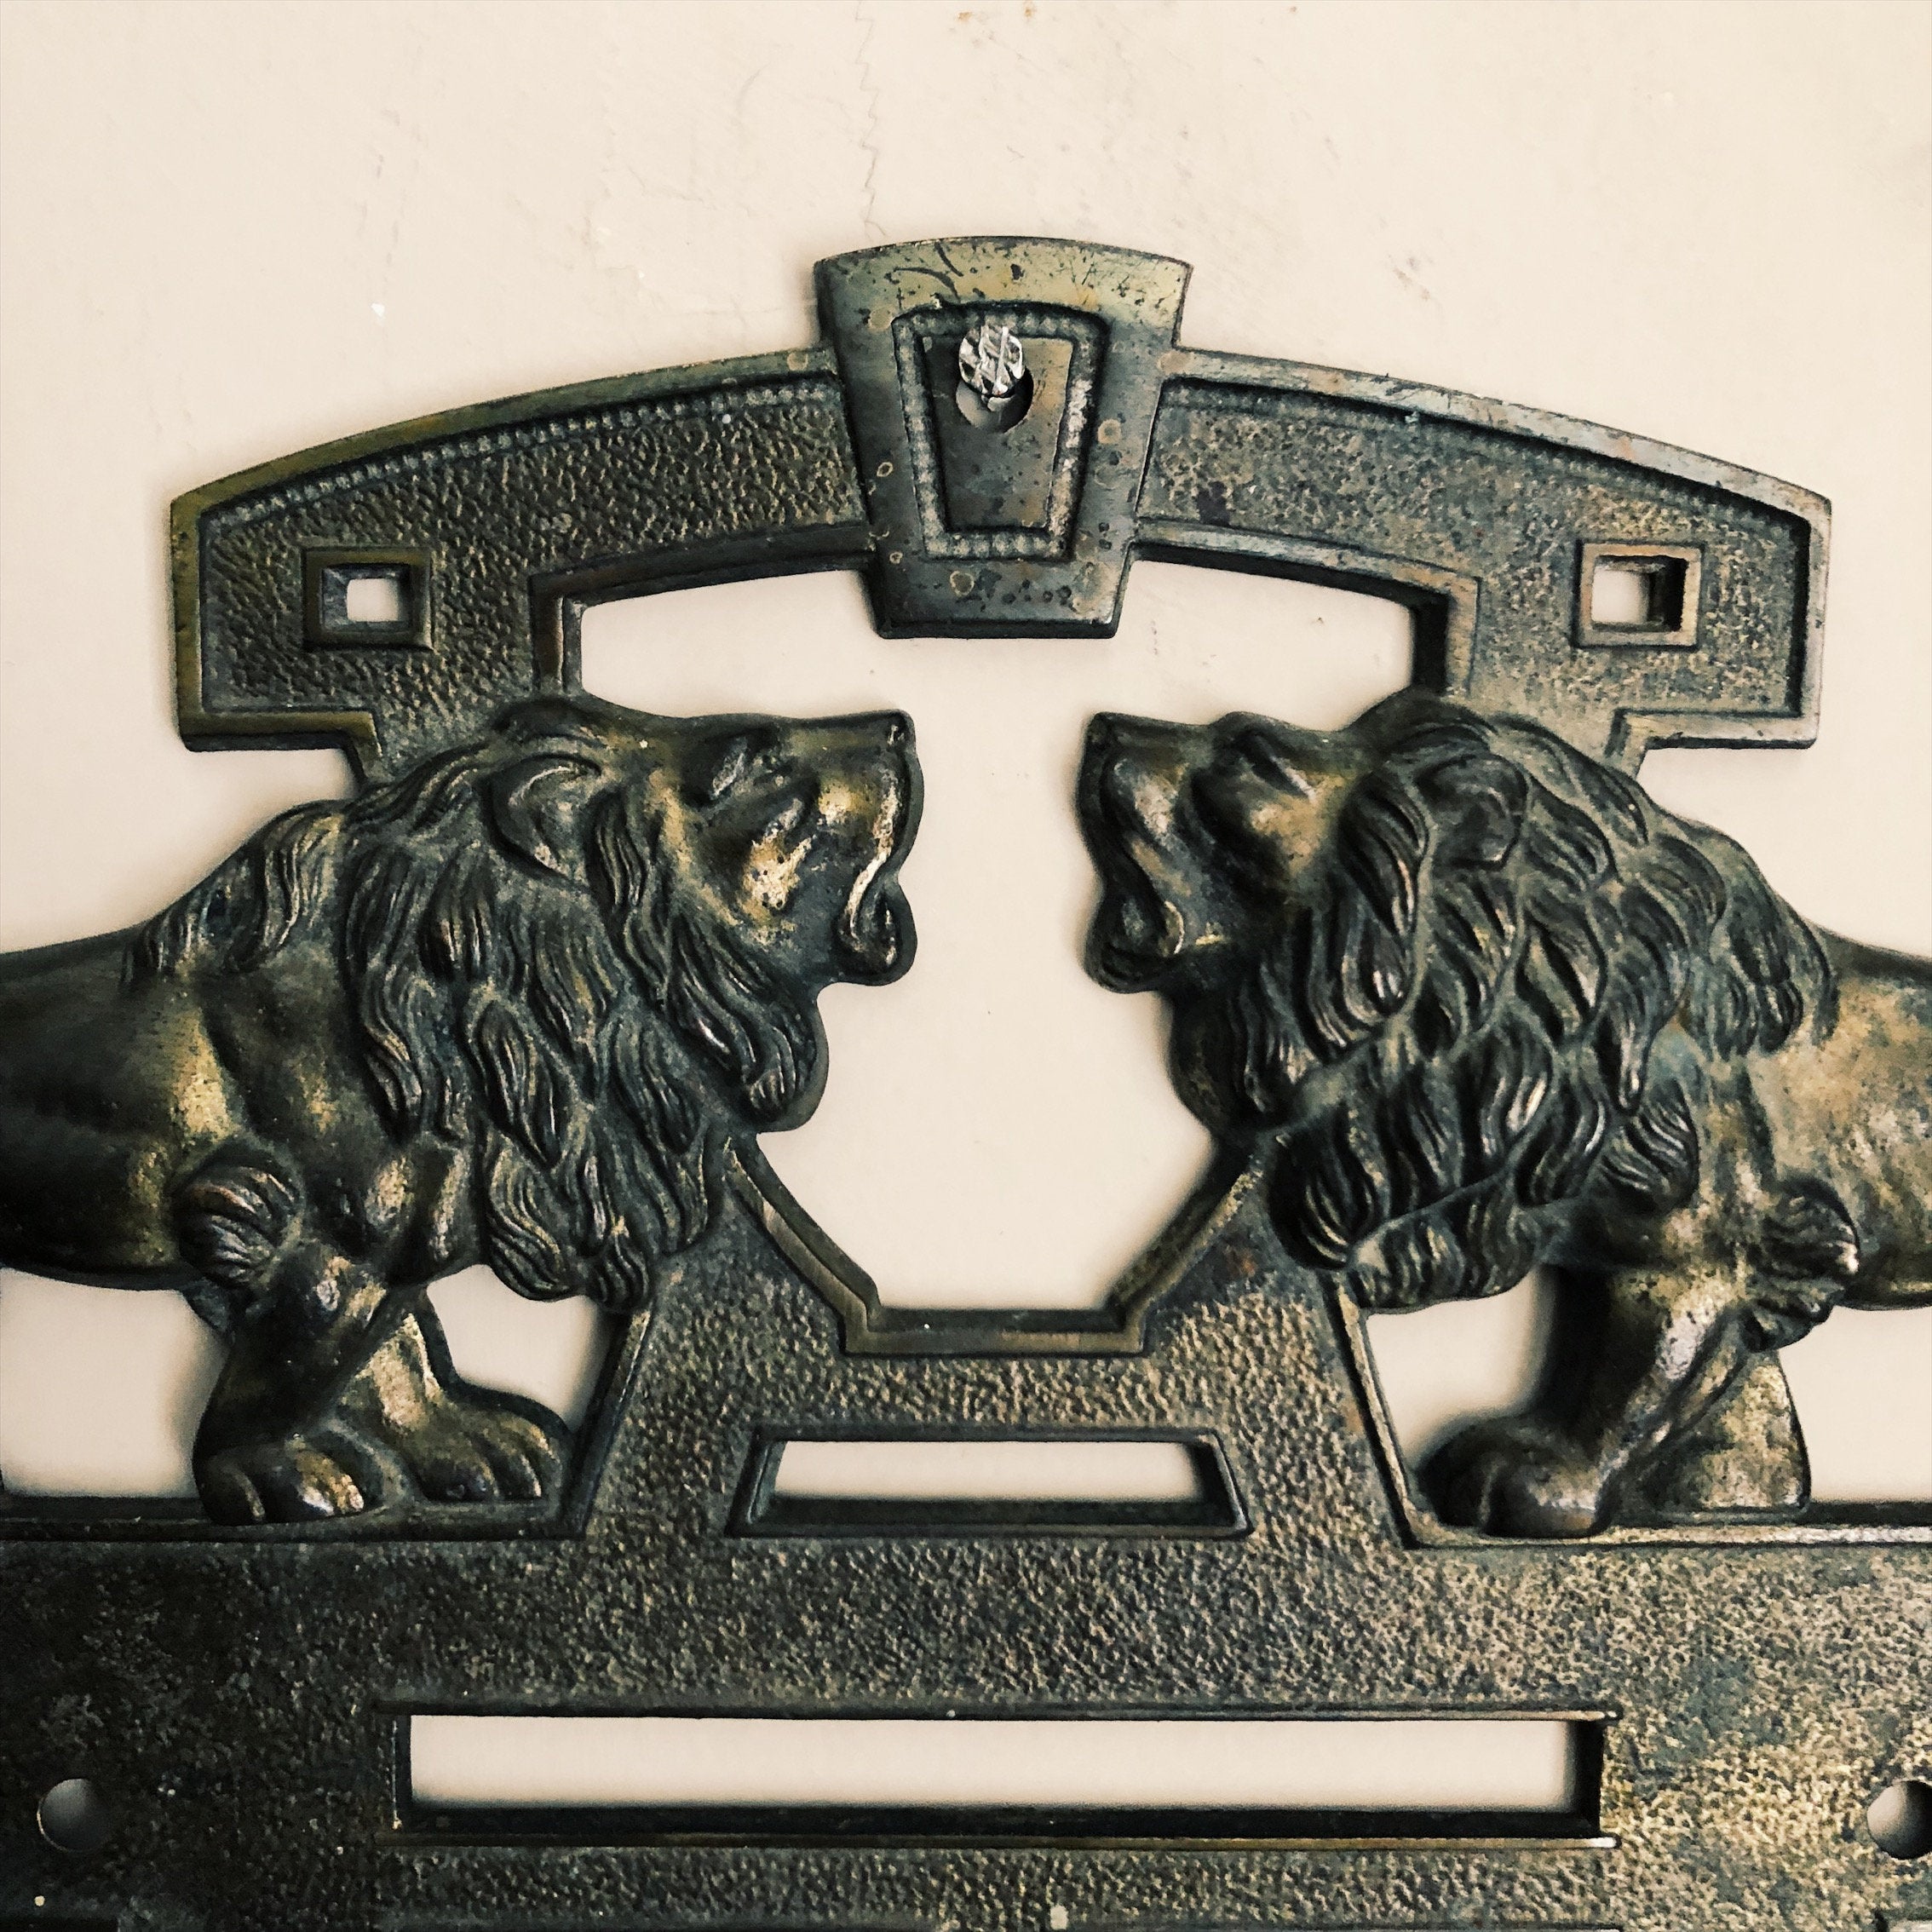 Antique Cast Iron Lion Decal - Antique Bank Advertisement? -